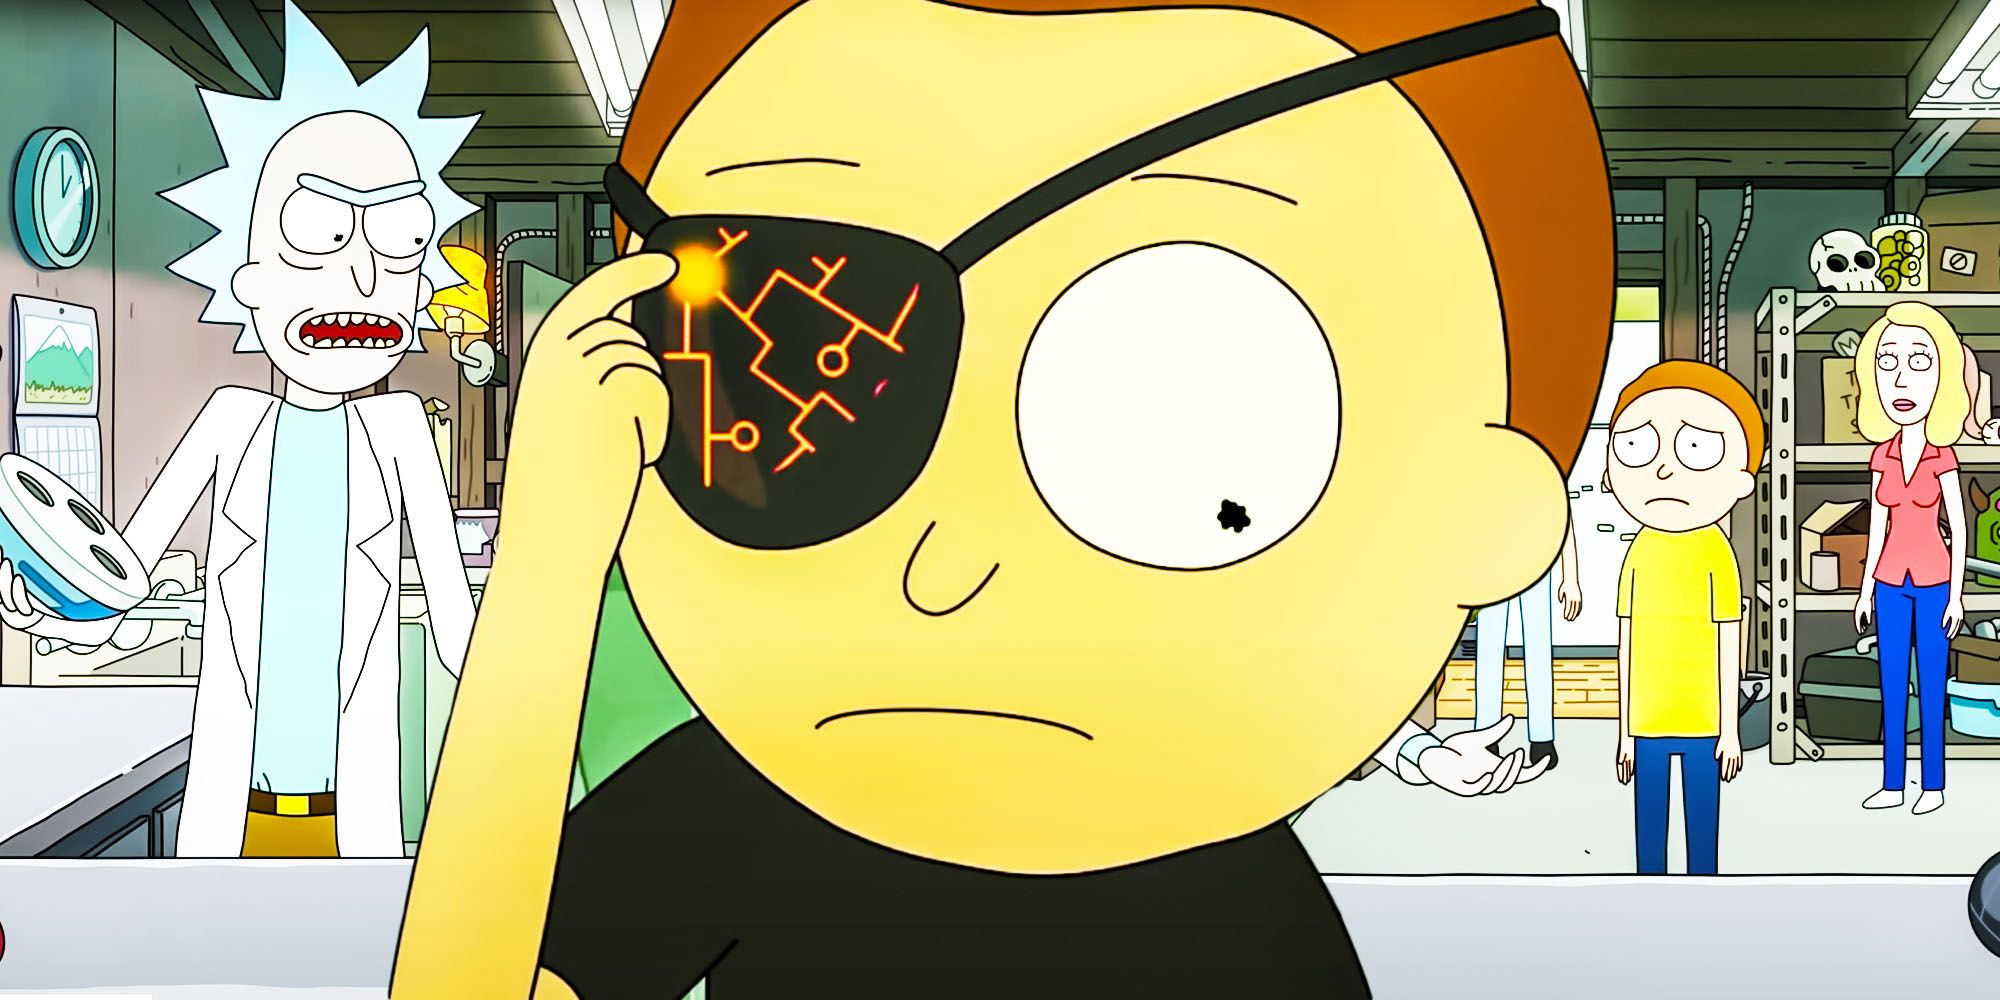 Rick and Morty season 6: Showrunner teases Evil Morty's return